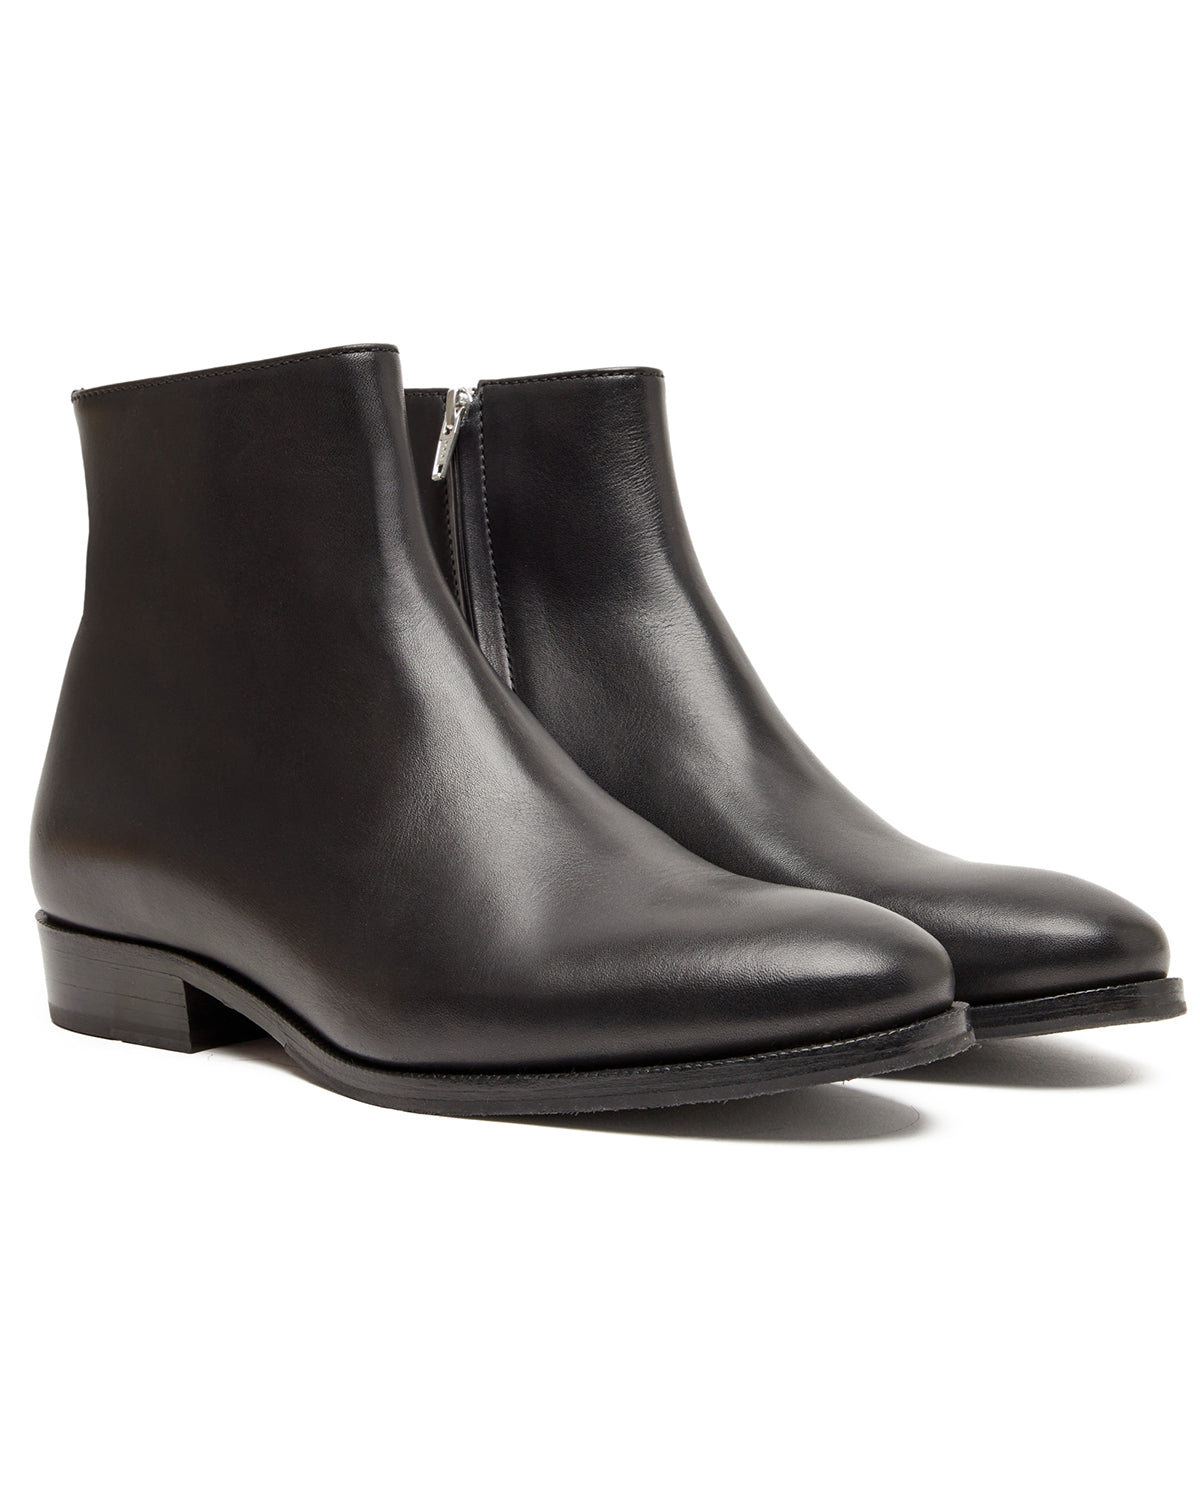 A.P.C. Boots Neil Black Shoes Leather Men